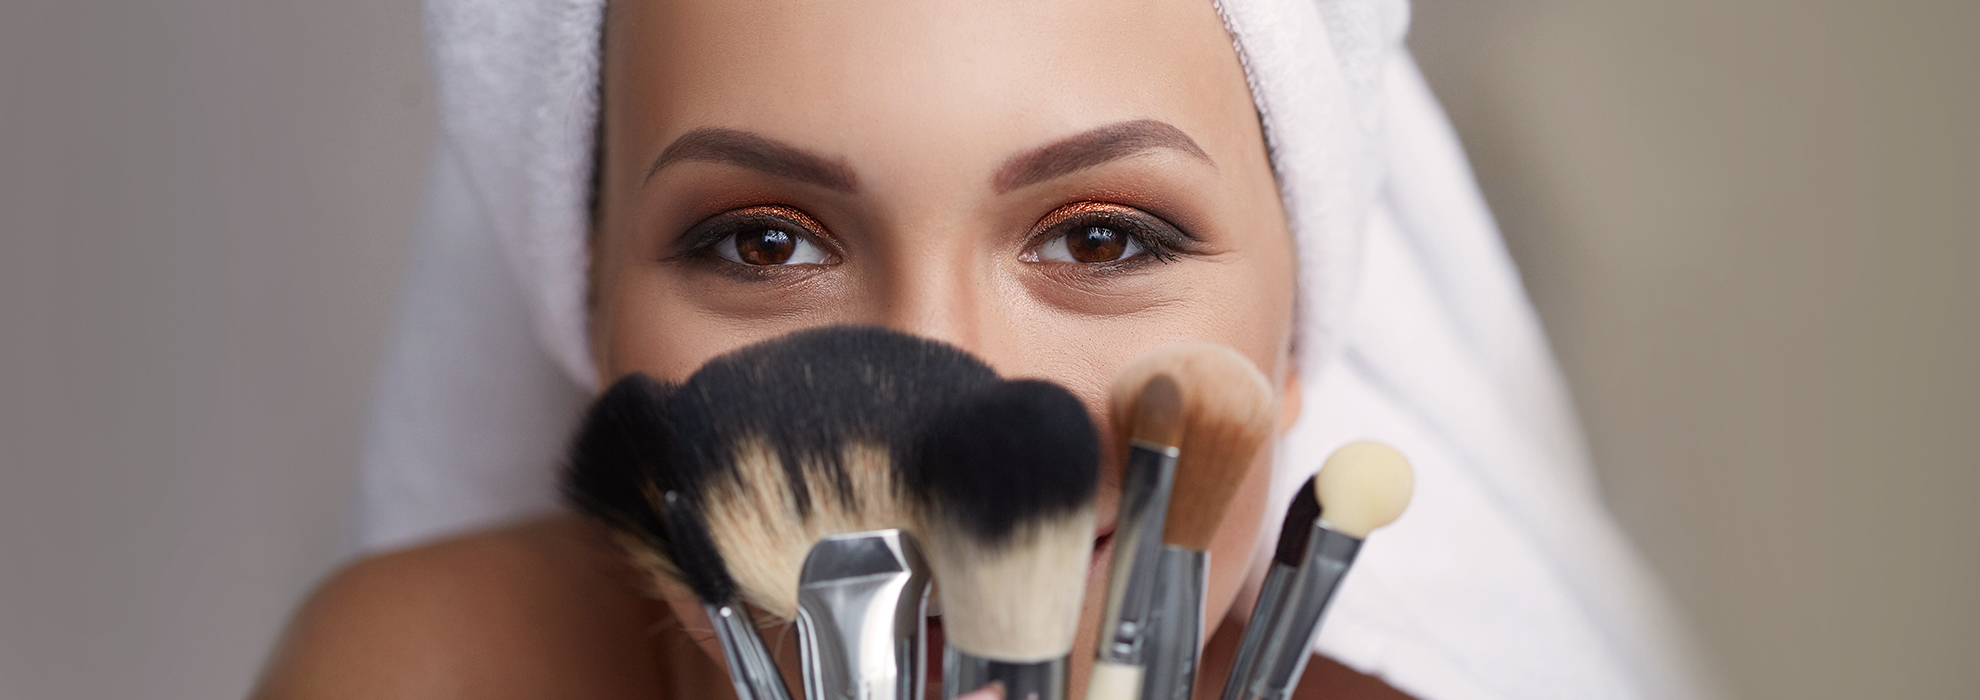 Pennelli makeup viso: quali scegliere e come usarli? - Guida facile e veloce